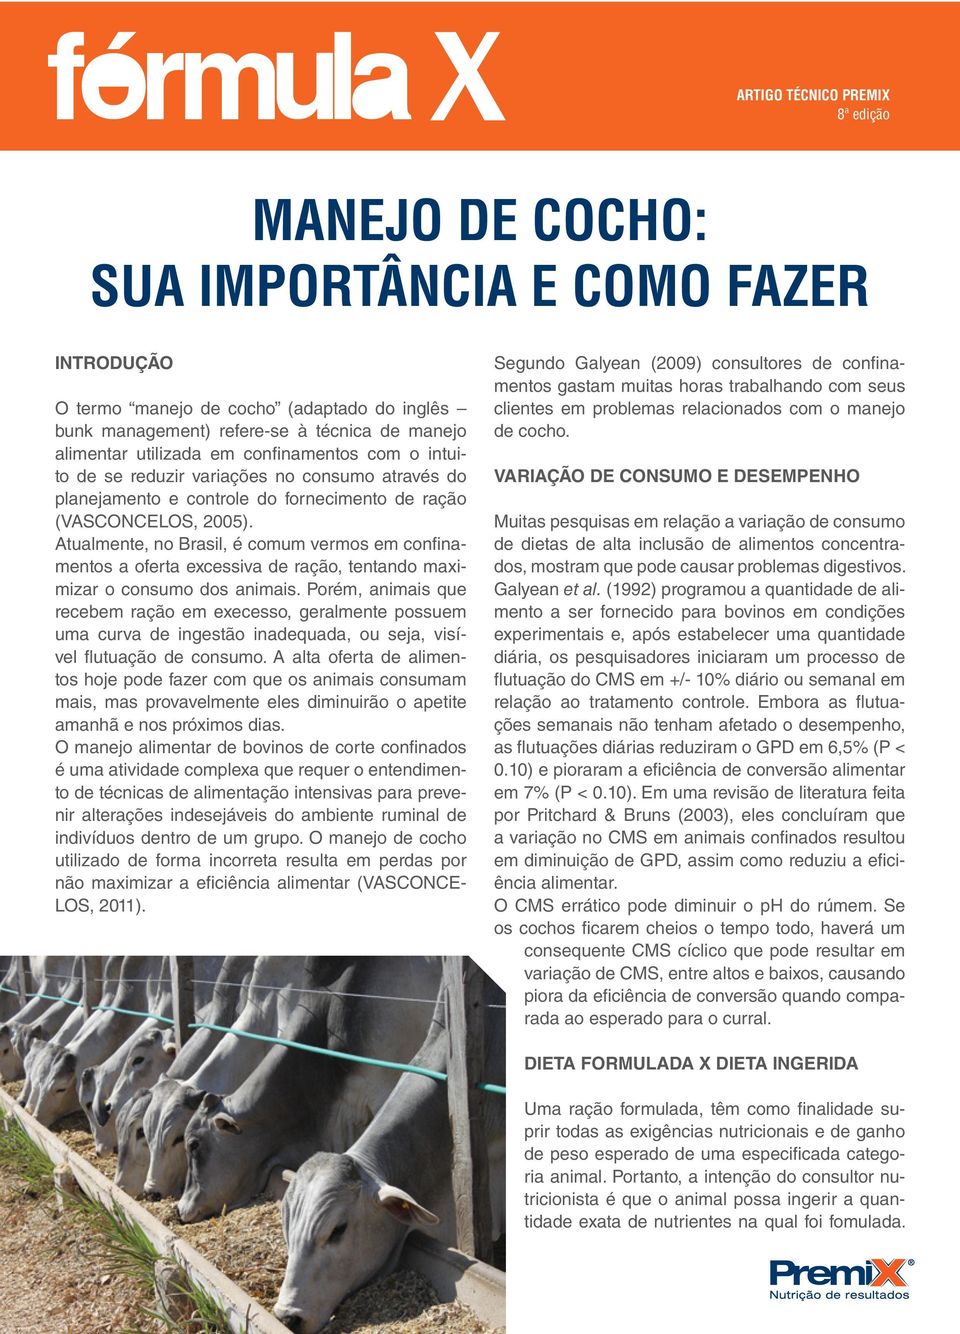 Atualmente, no Brasil, é comum vermos em confinamentos a oferta excessiva de ração, tentando maximizar o consumo dos animais.